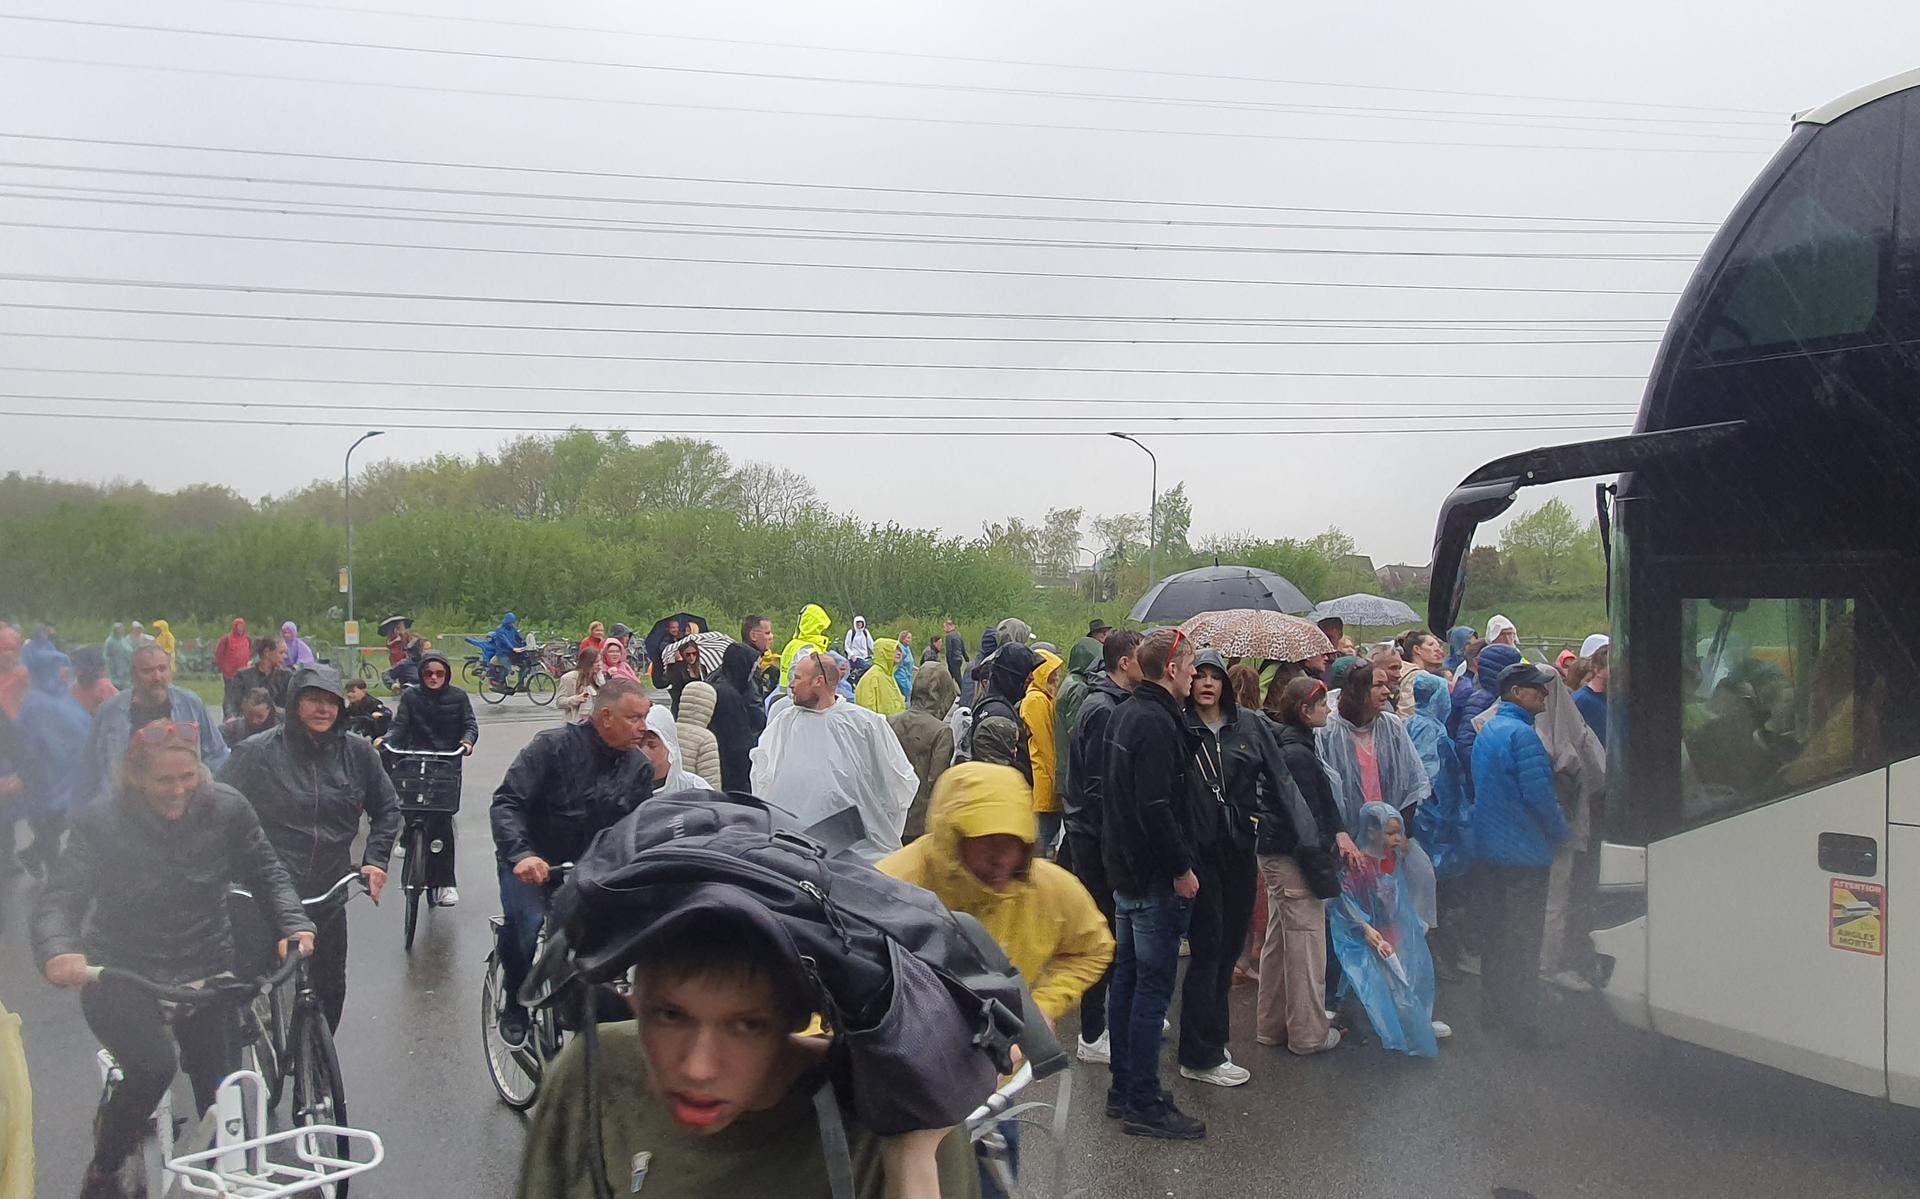 Bezoekers van het Bevrijdingsfestival in Assen zoeken beschutting tegen de regen.